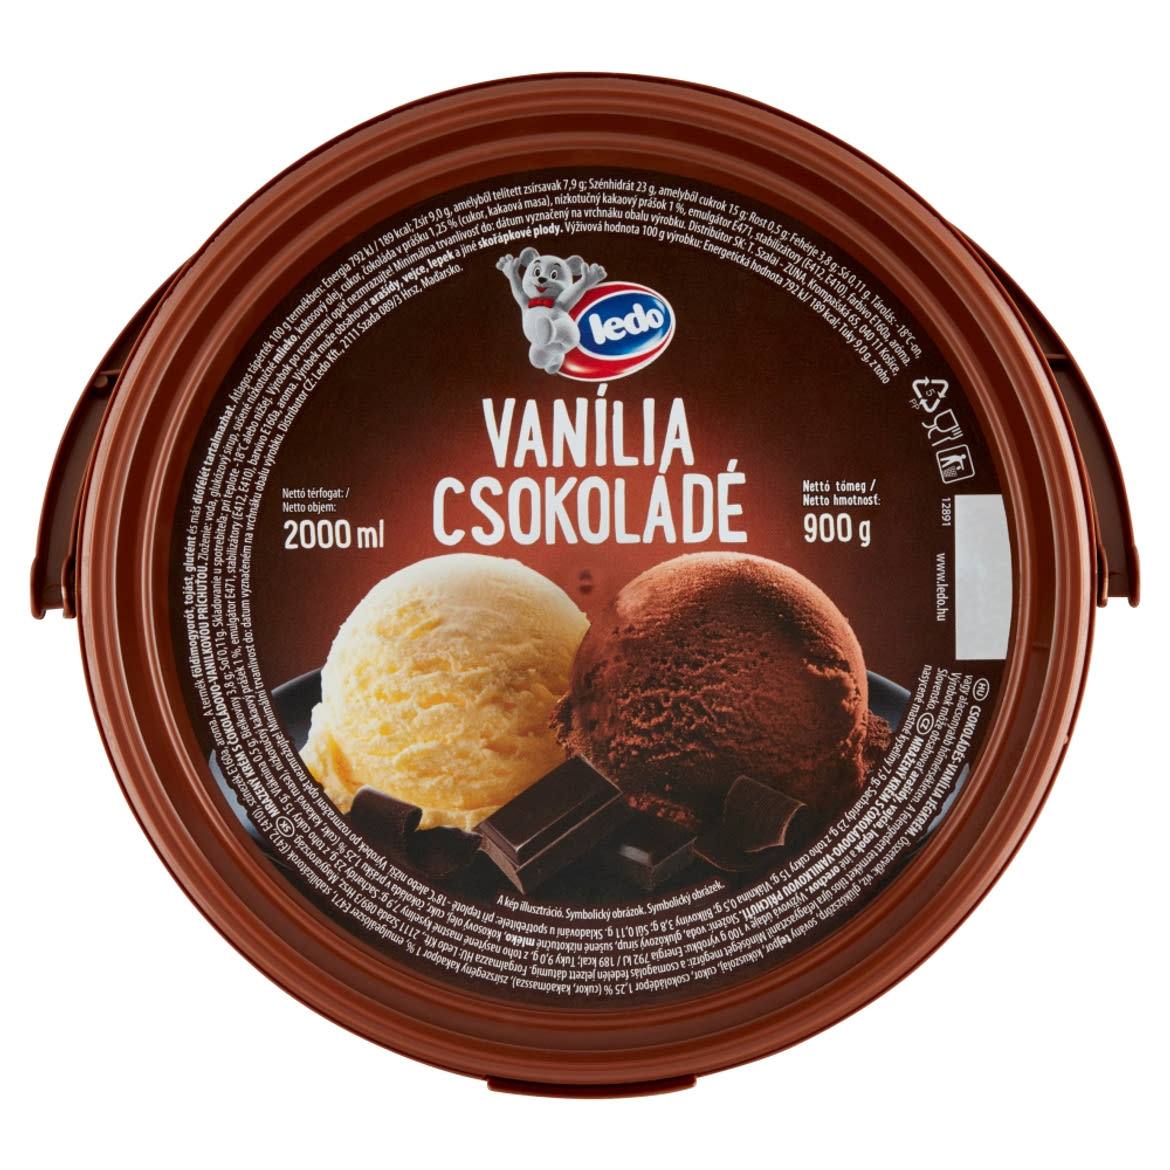 Ledo csokoládés-vanília jégkrém 2000 ml